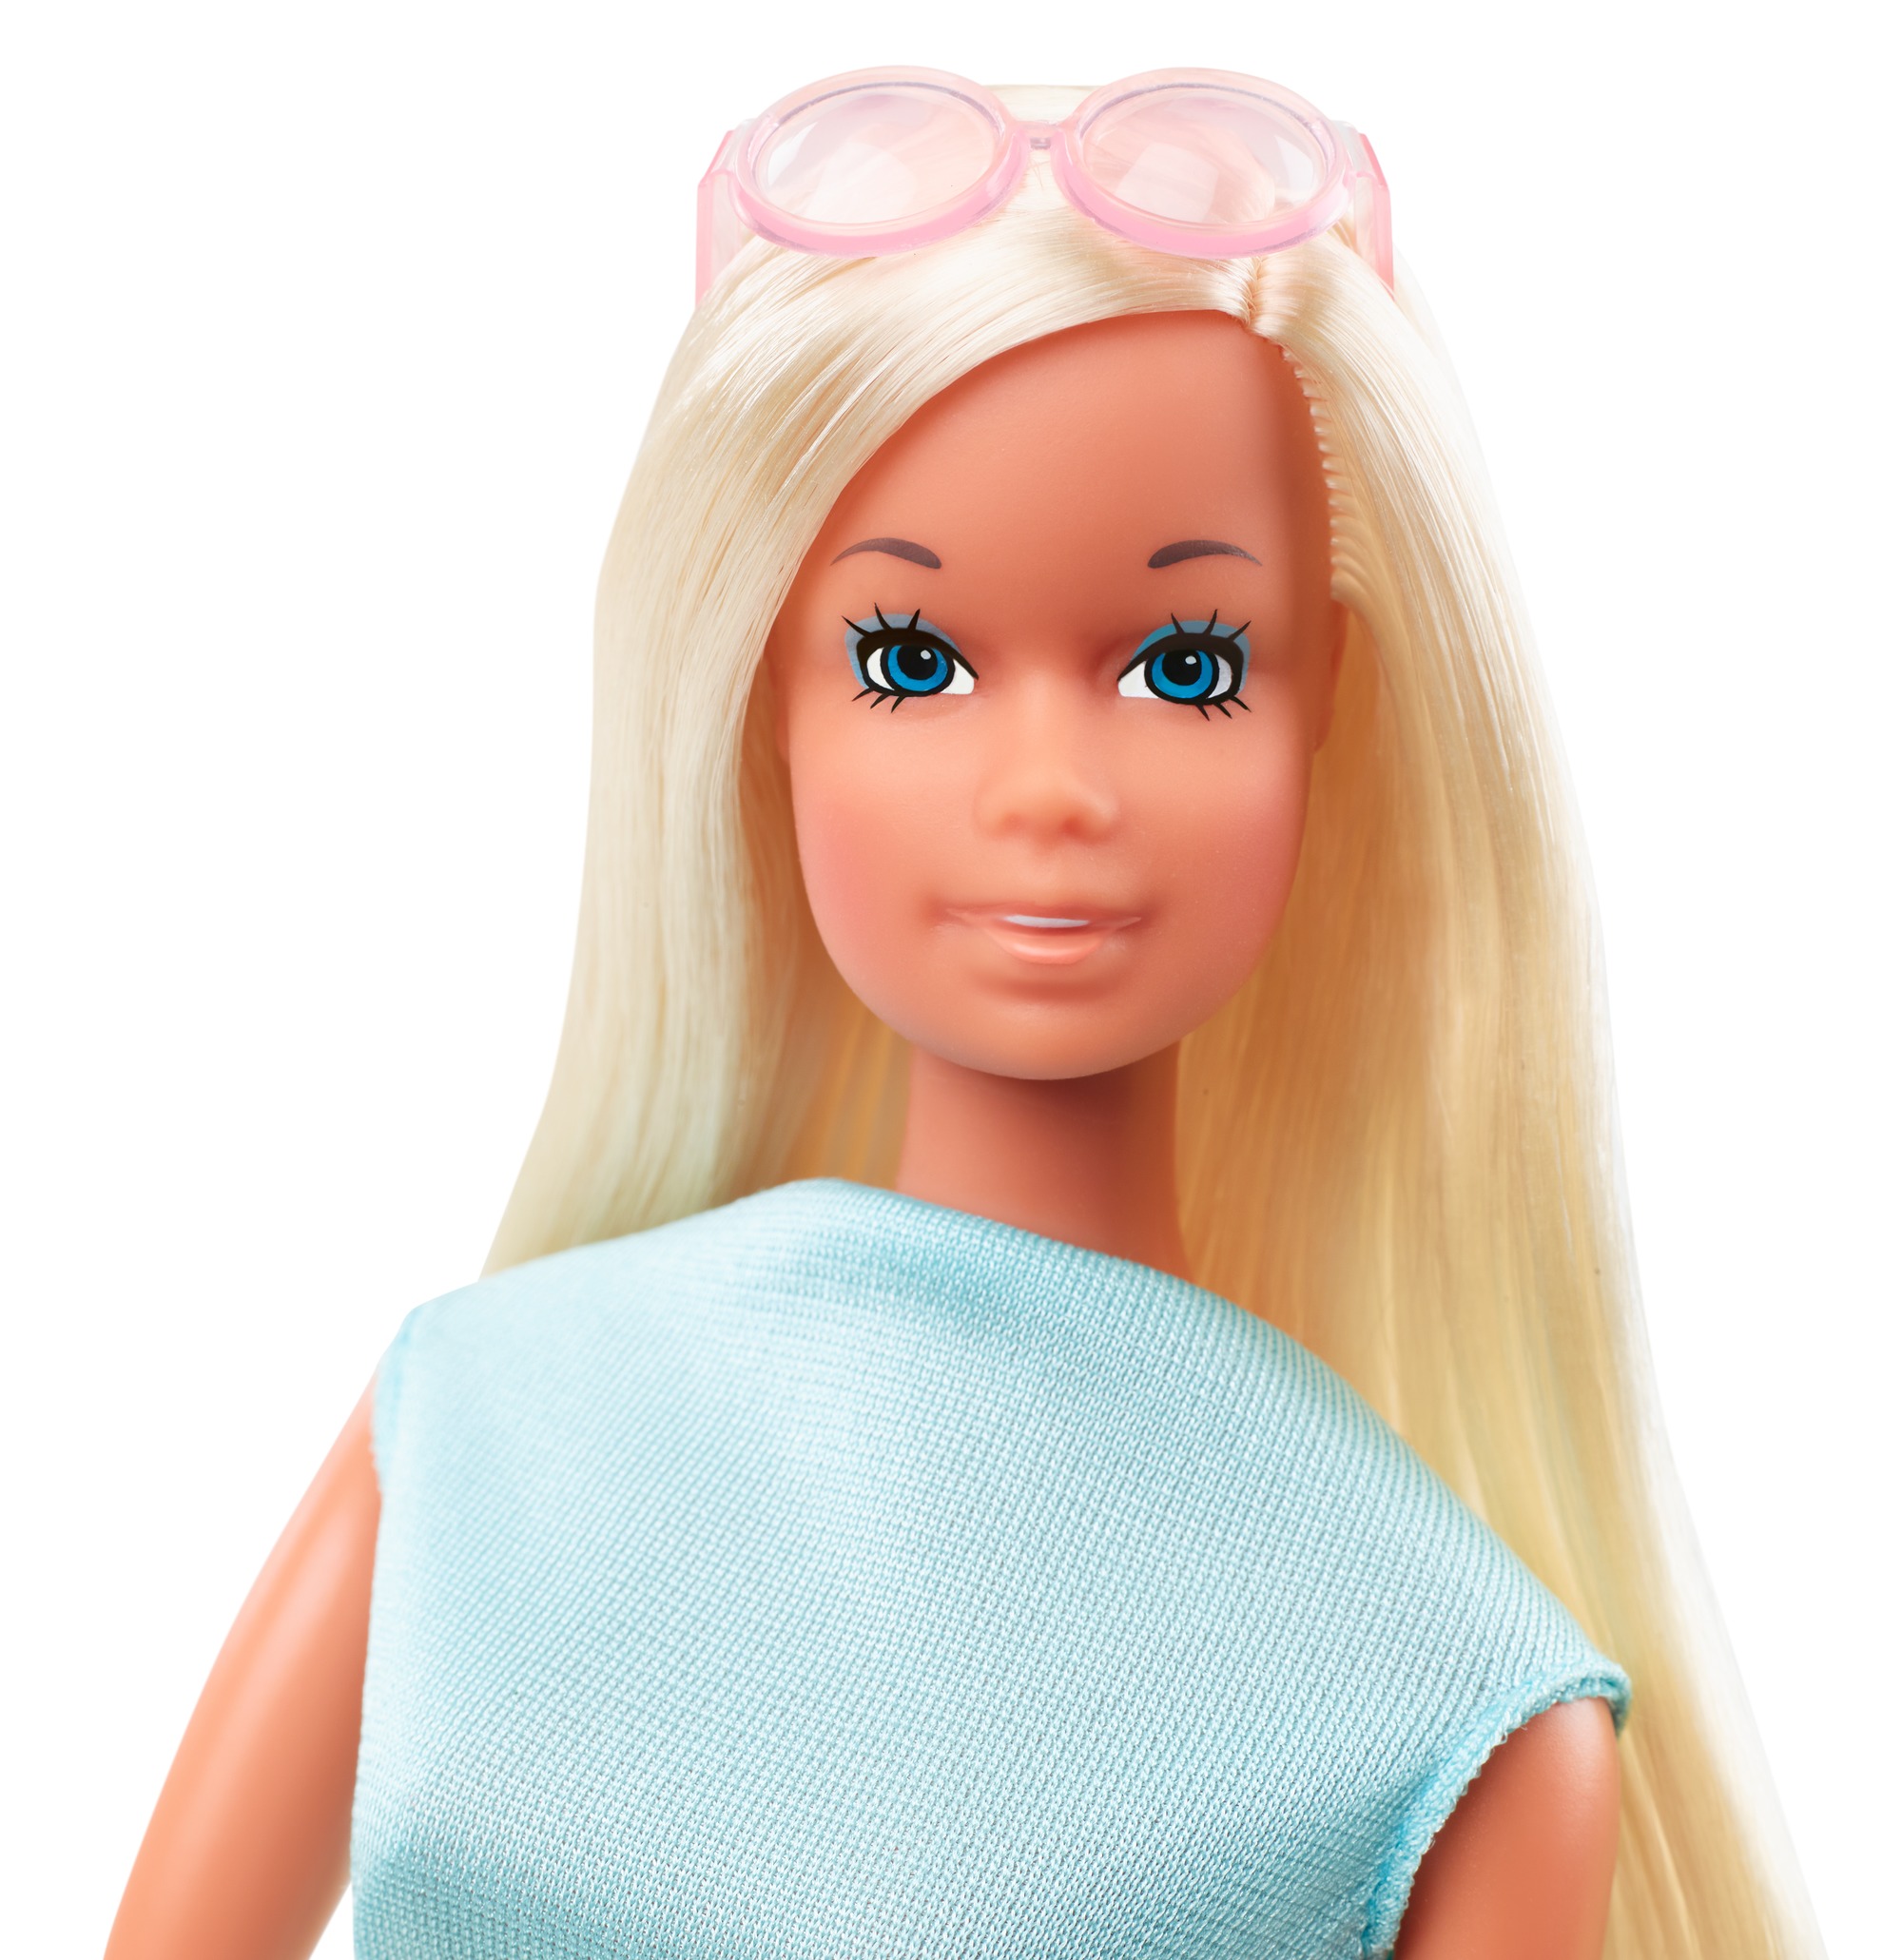 Barbie - malibu & friends, riproduzione vintage, set con barbie, pj e christie in costume da bagno - Barbie